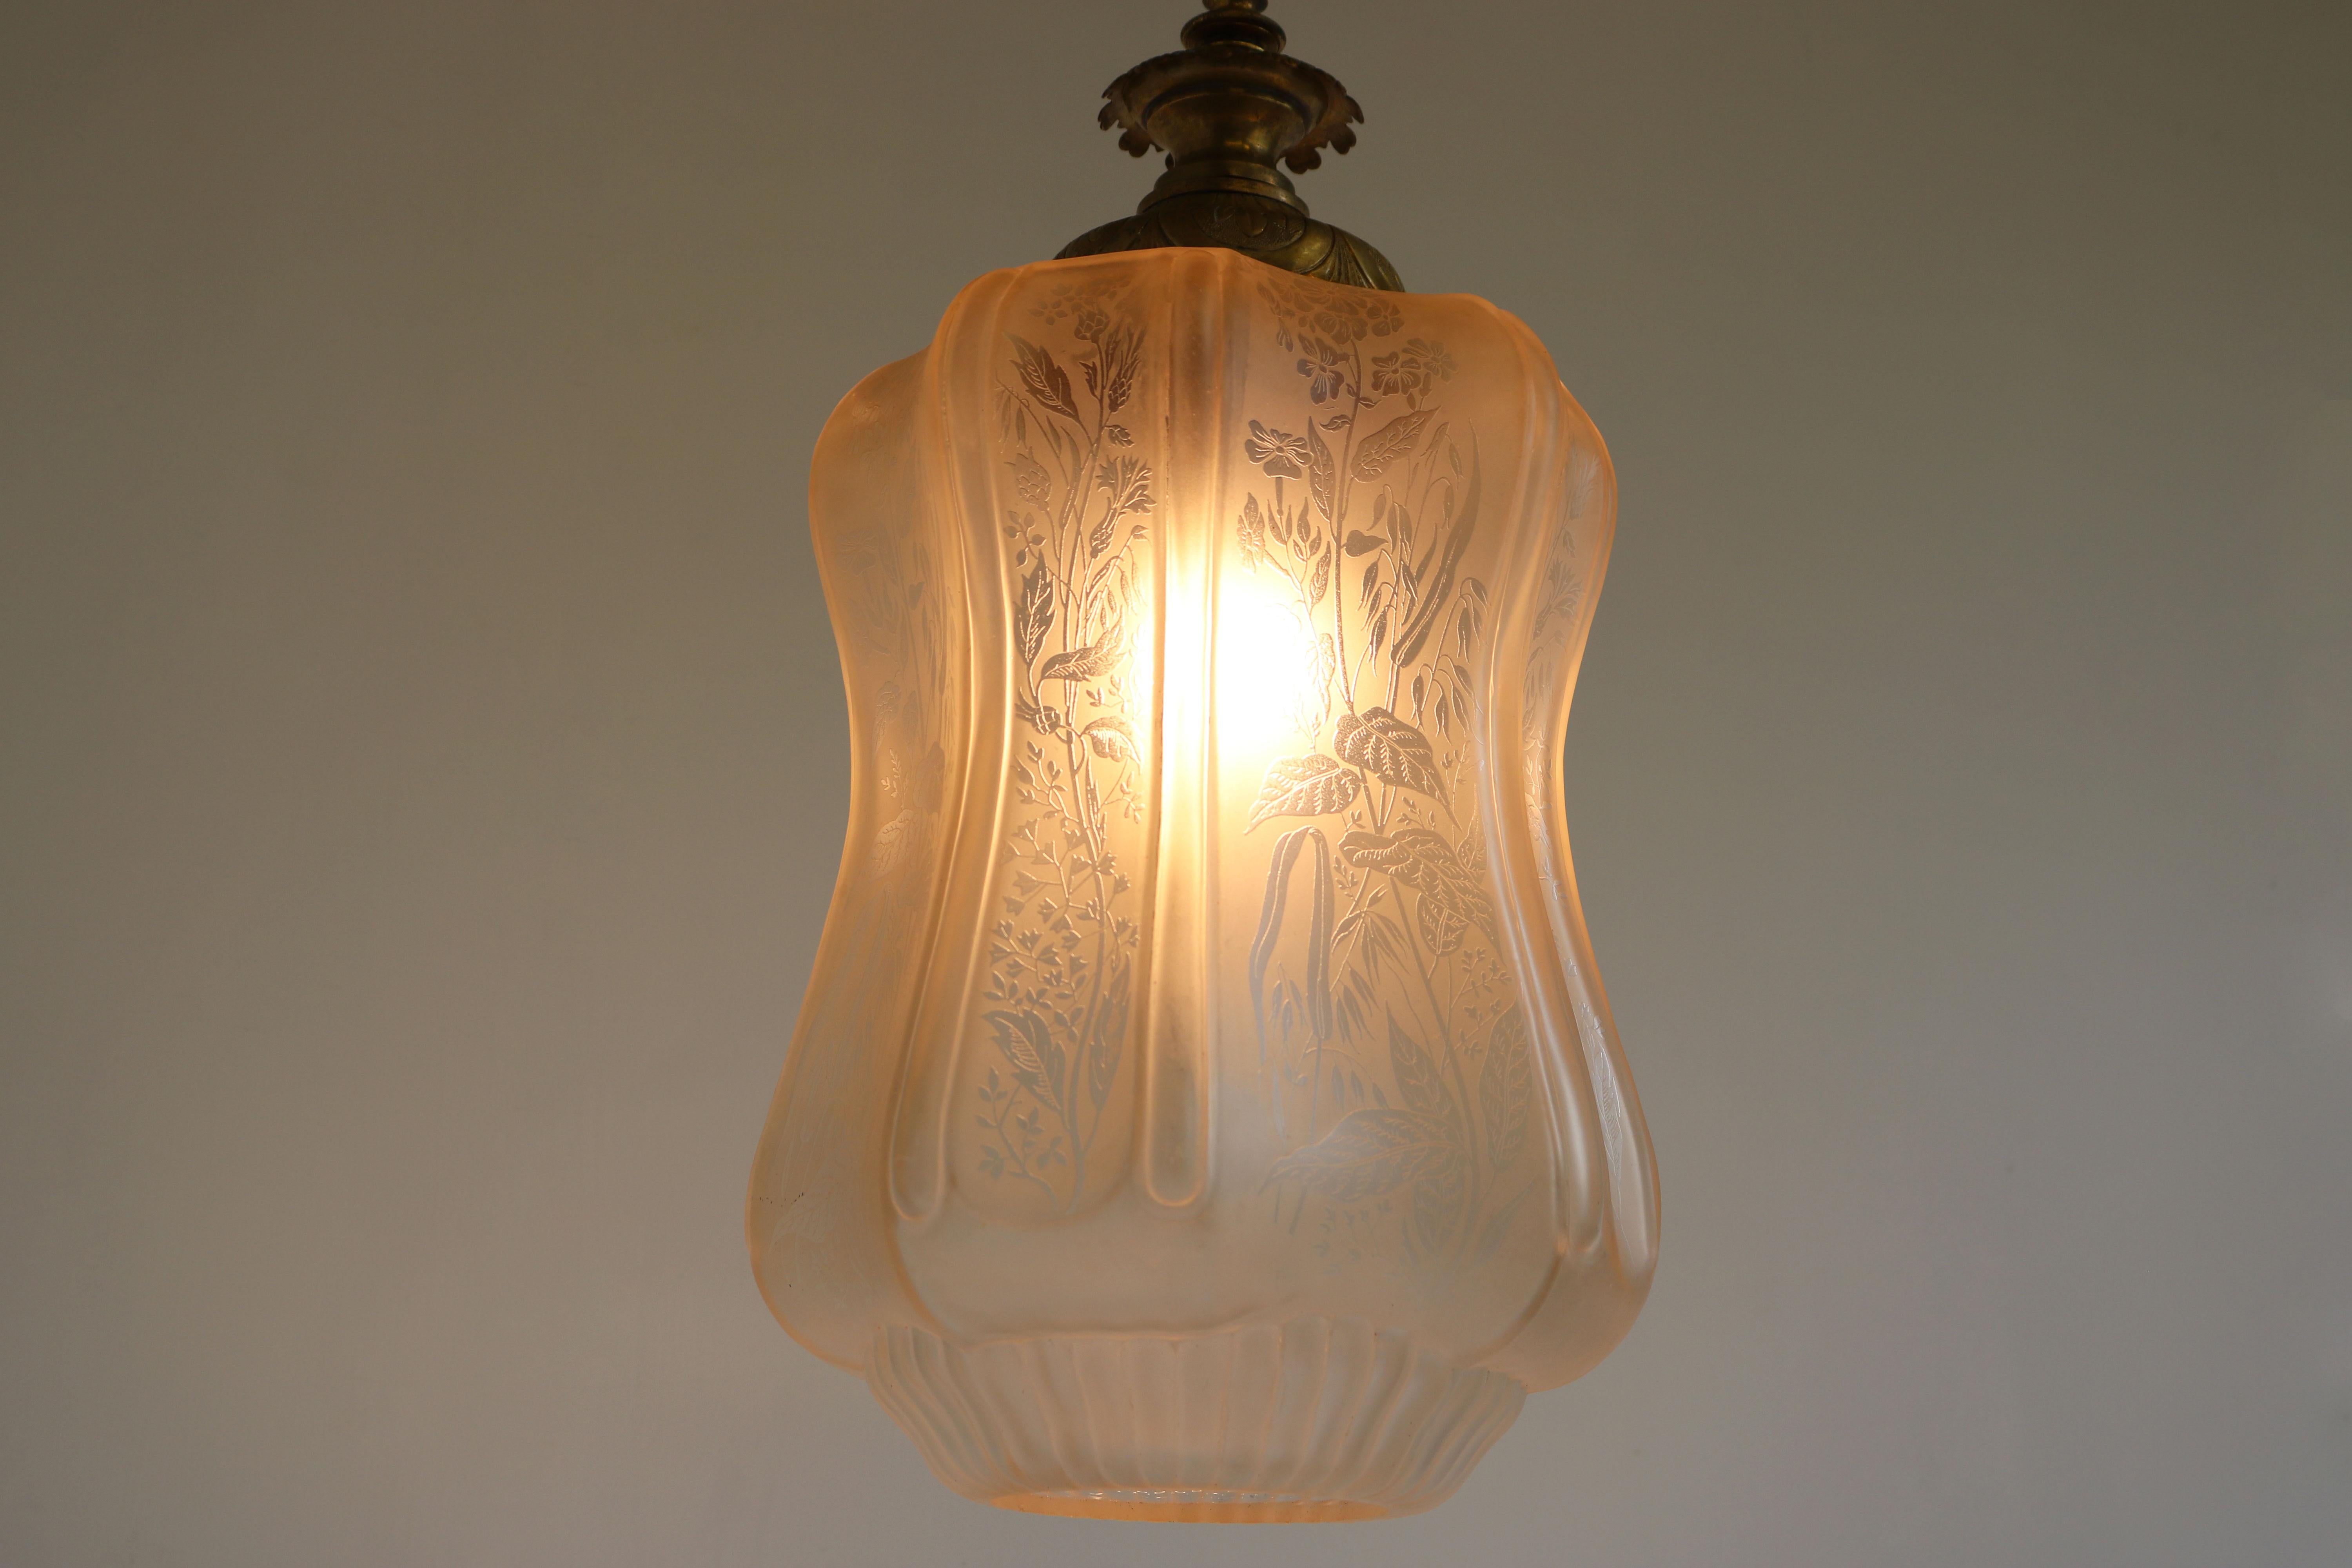 Brass Large Antique French Art Nouveau Pedant Light 1910 Floral Glass Light Chandelier For Sale